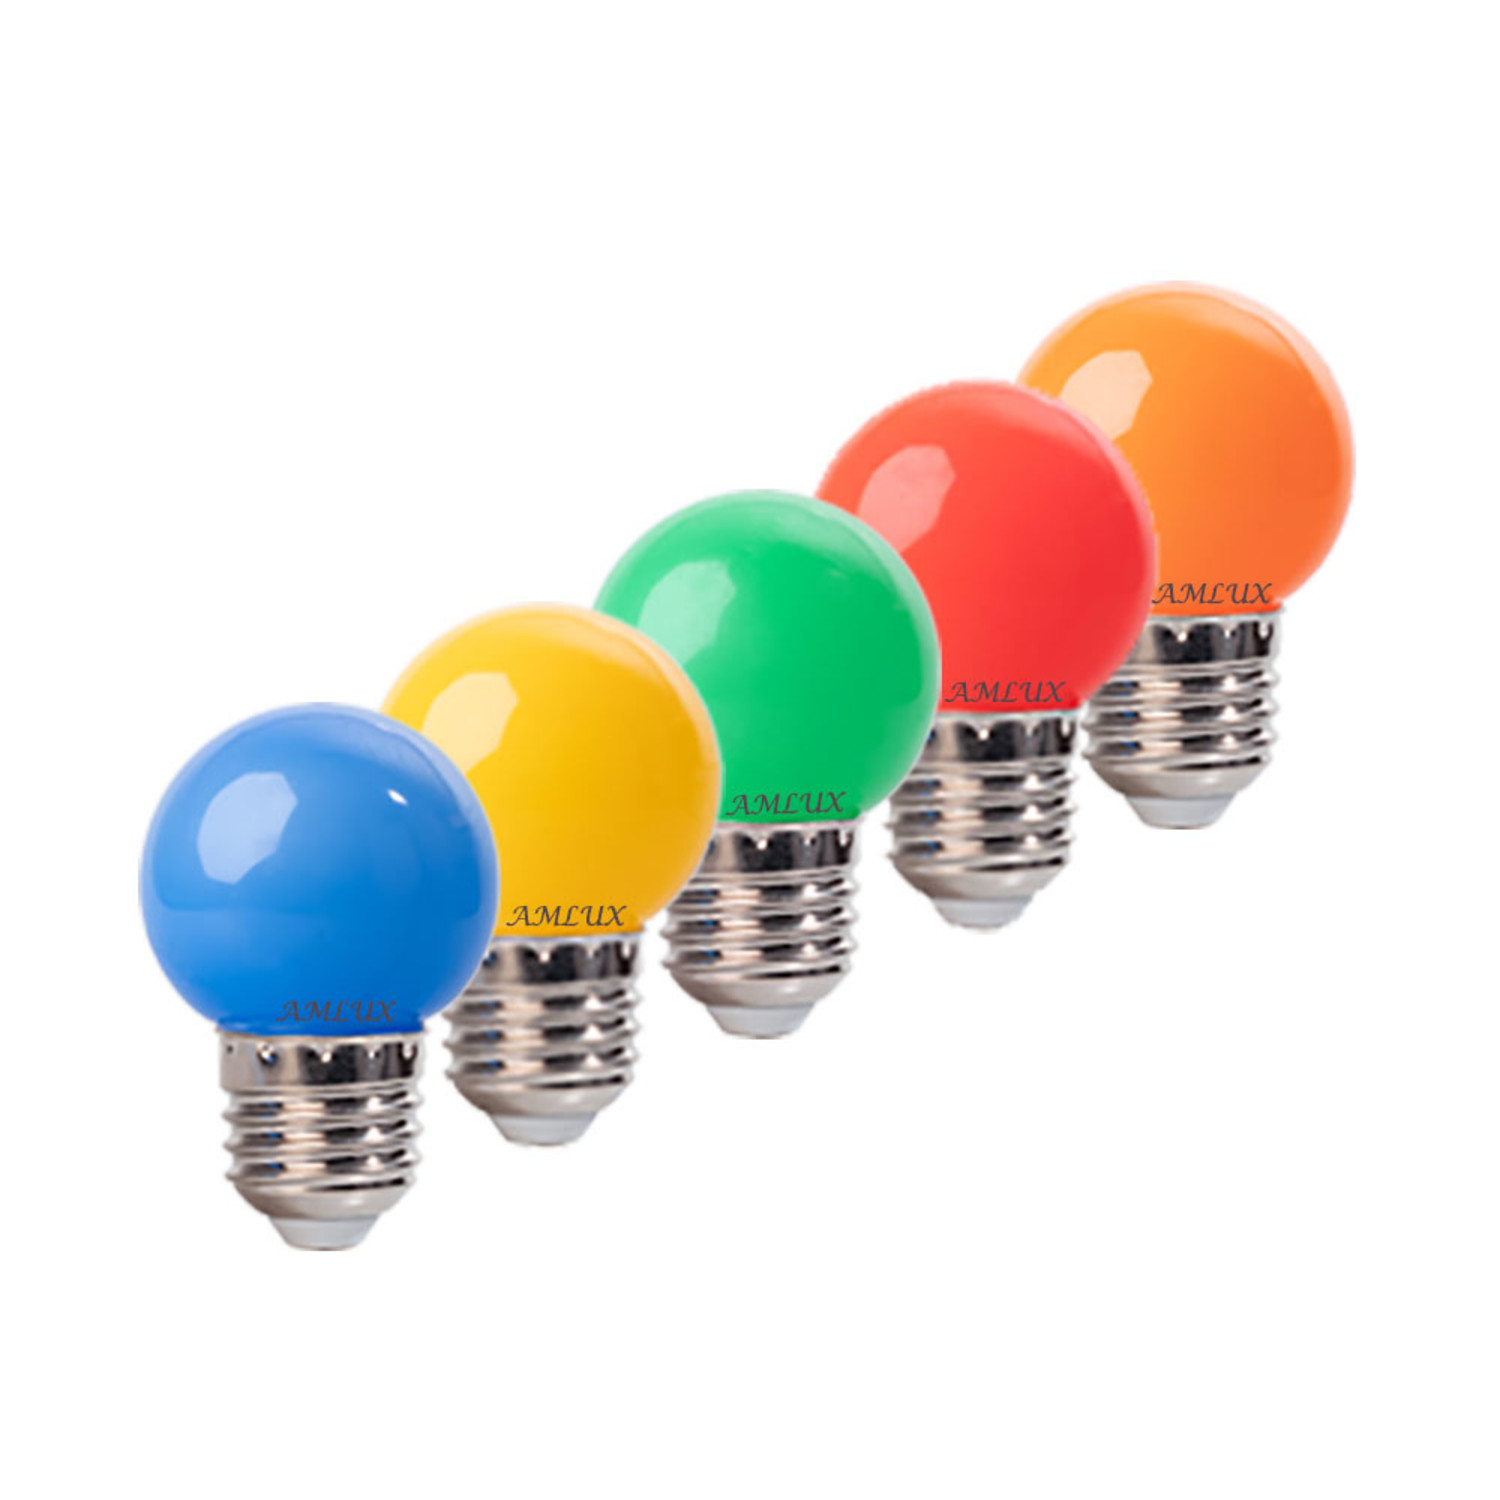 Set van 20 LED lampen in 5 kleuren